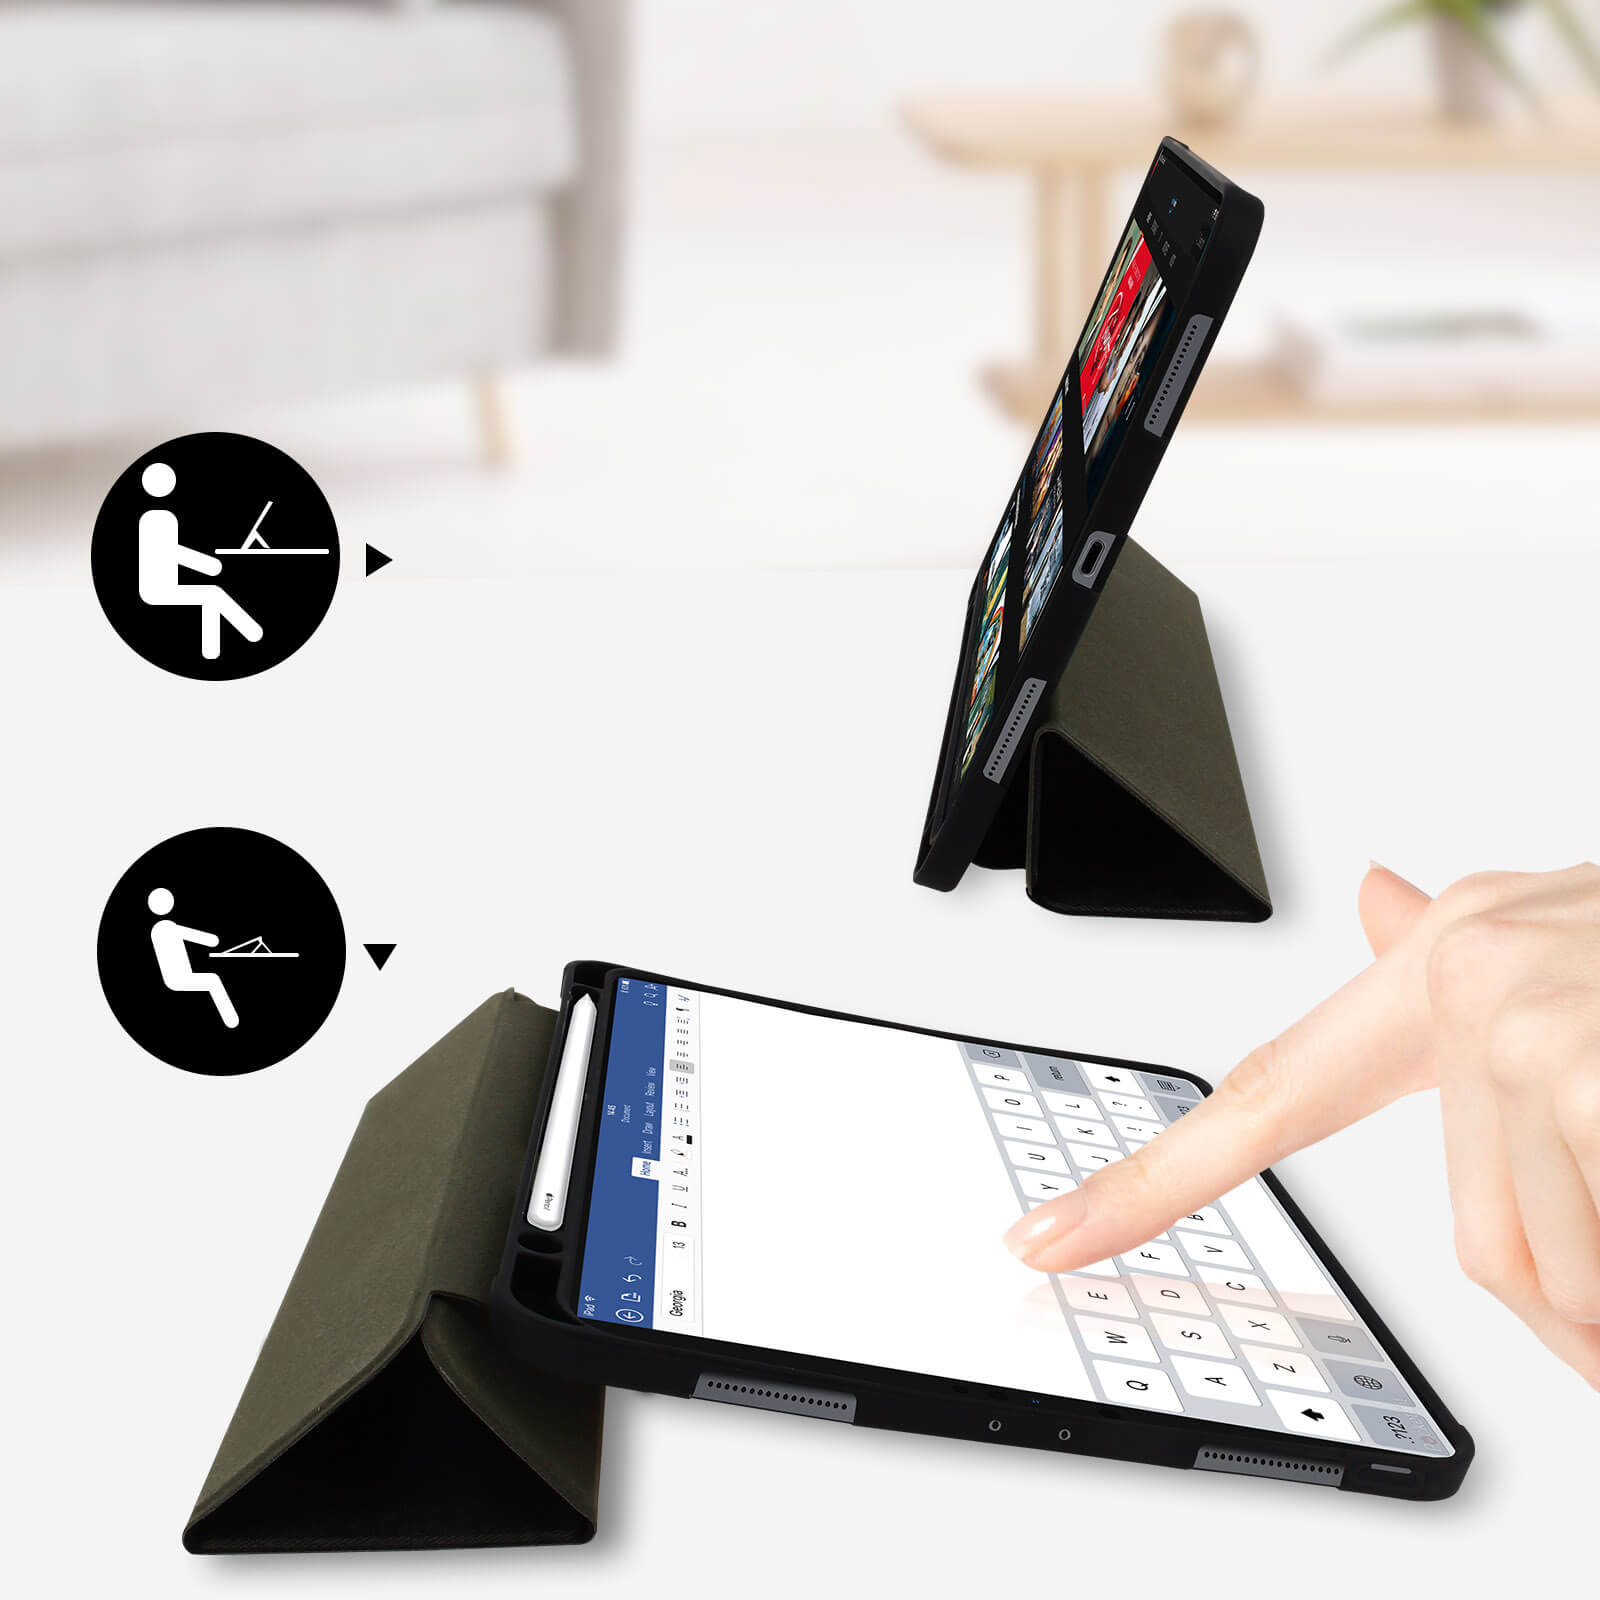 Housse Etui Noir pour Apple iPad Pro 11 2021 Coque avec Support